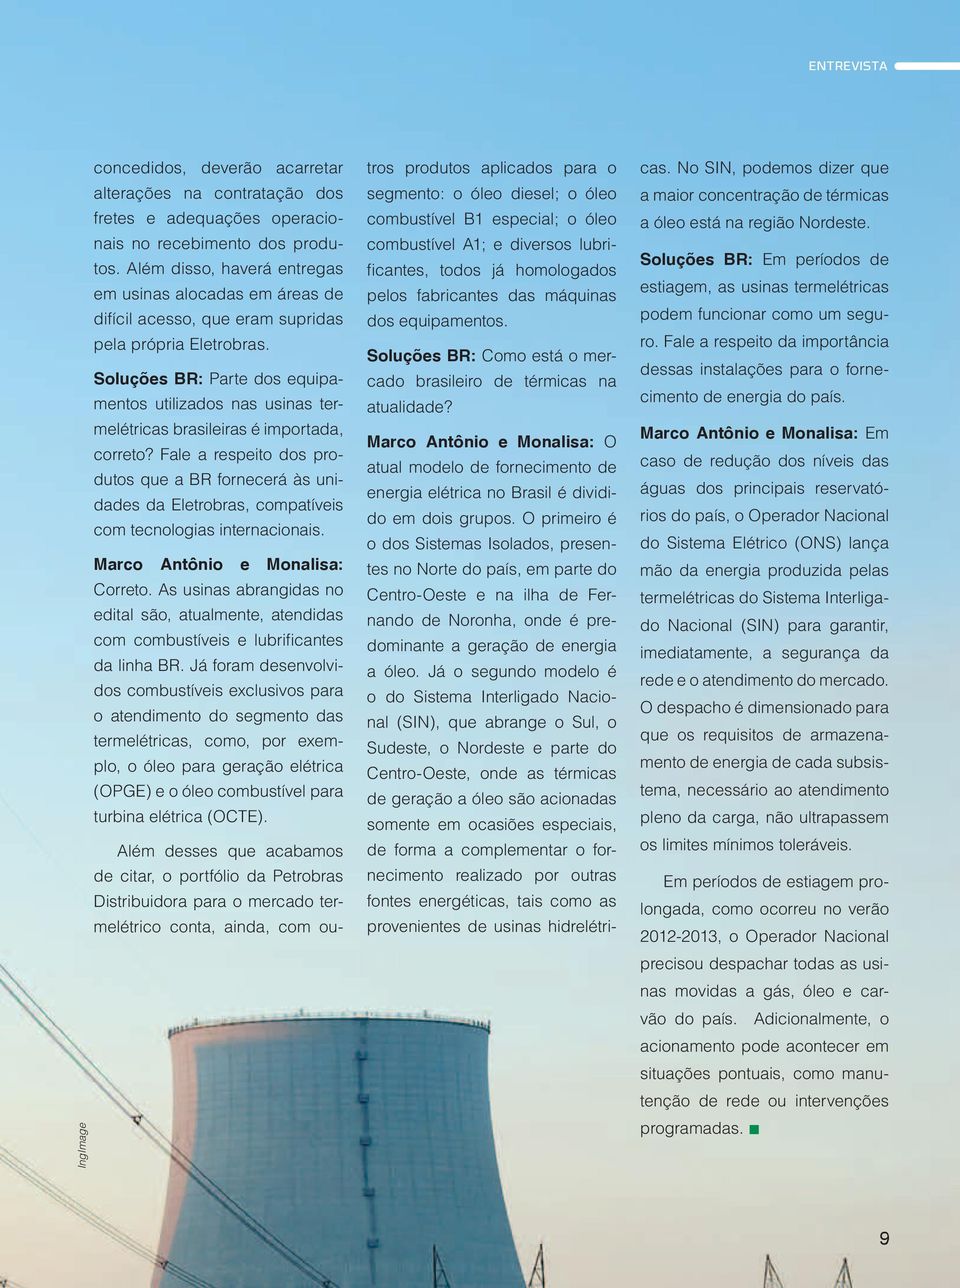 Soluções BR: Parte dos equipamentos utilizados nas usinas termelétricas brasileiras é importada, correto?